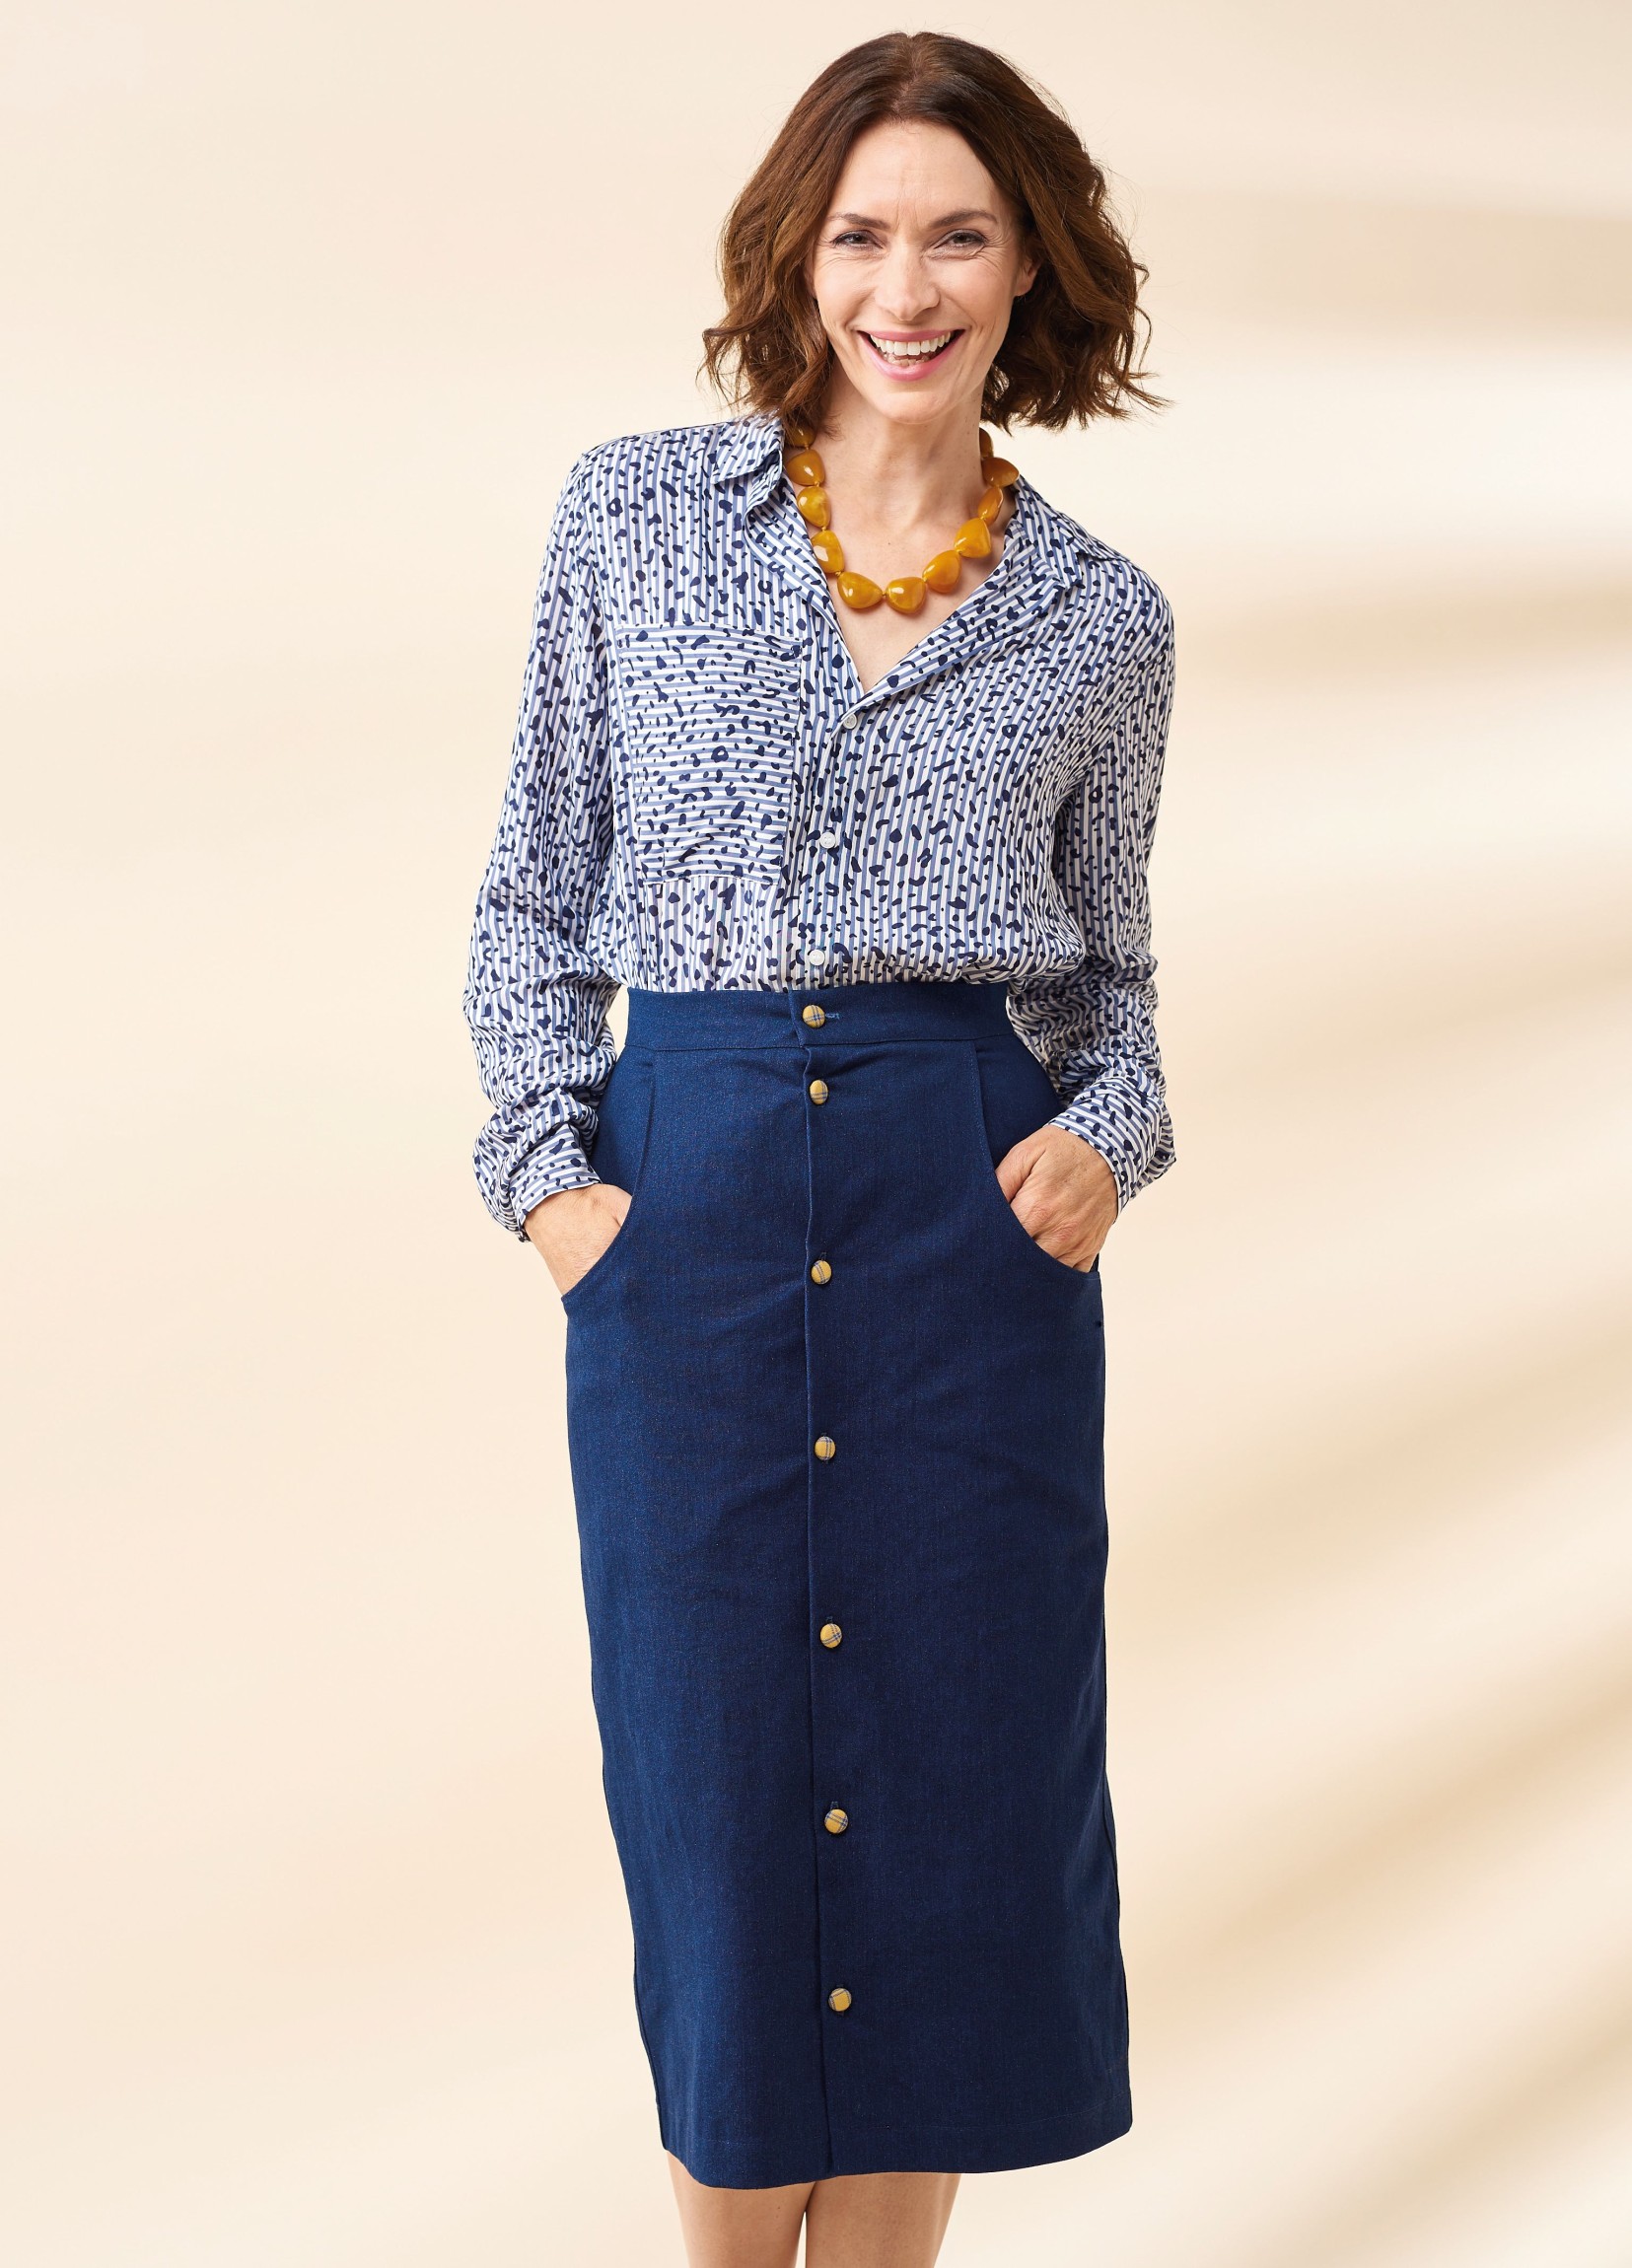 Suzy Skirt - Free sewing patterns - Sew Magazine